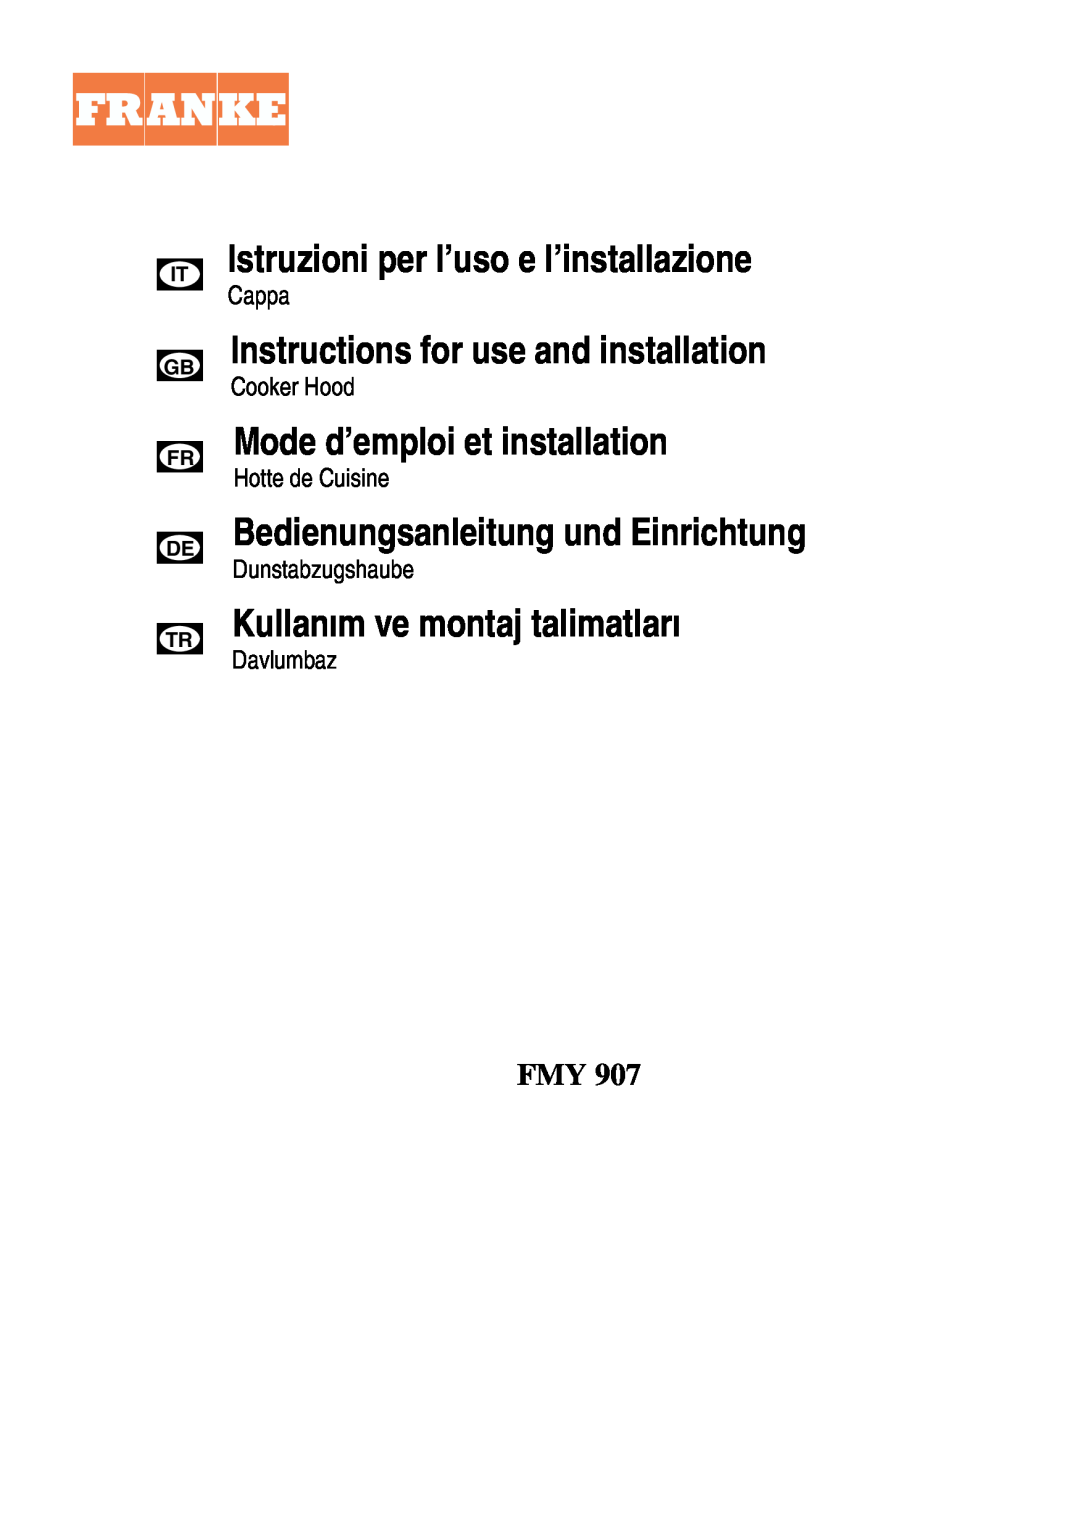 Franke Consumer Products FMY 907 manual Istruzioni per l’uso e l’installazione, Instructions for use and installation 